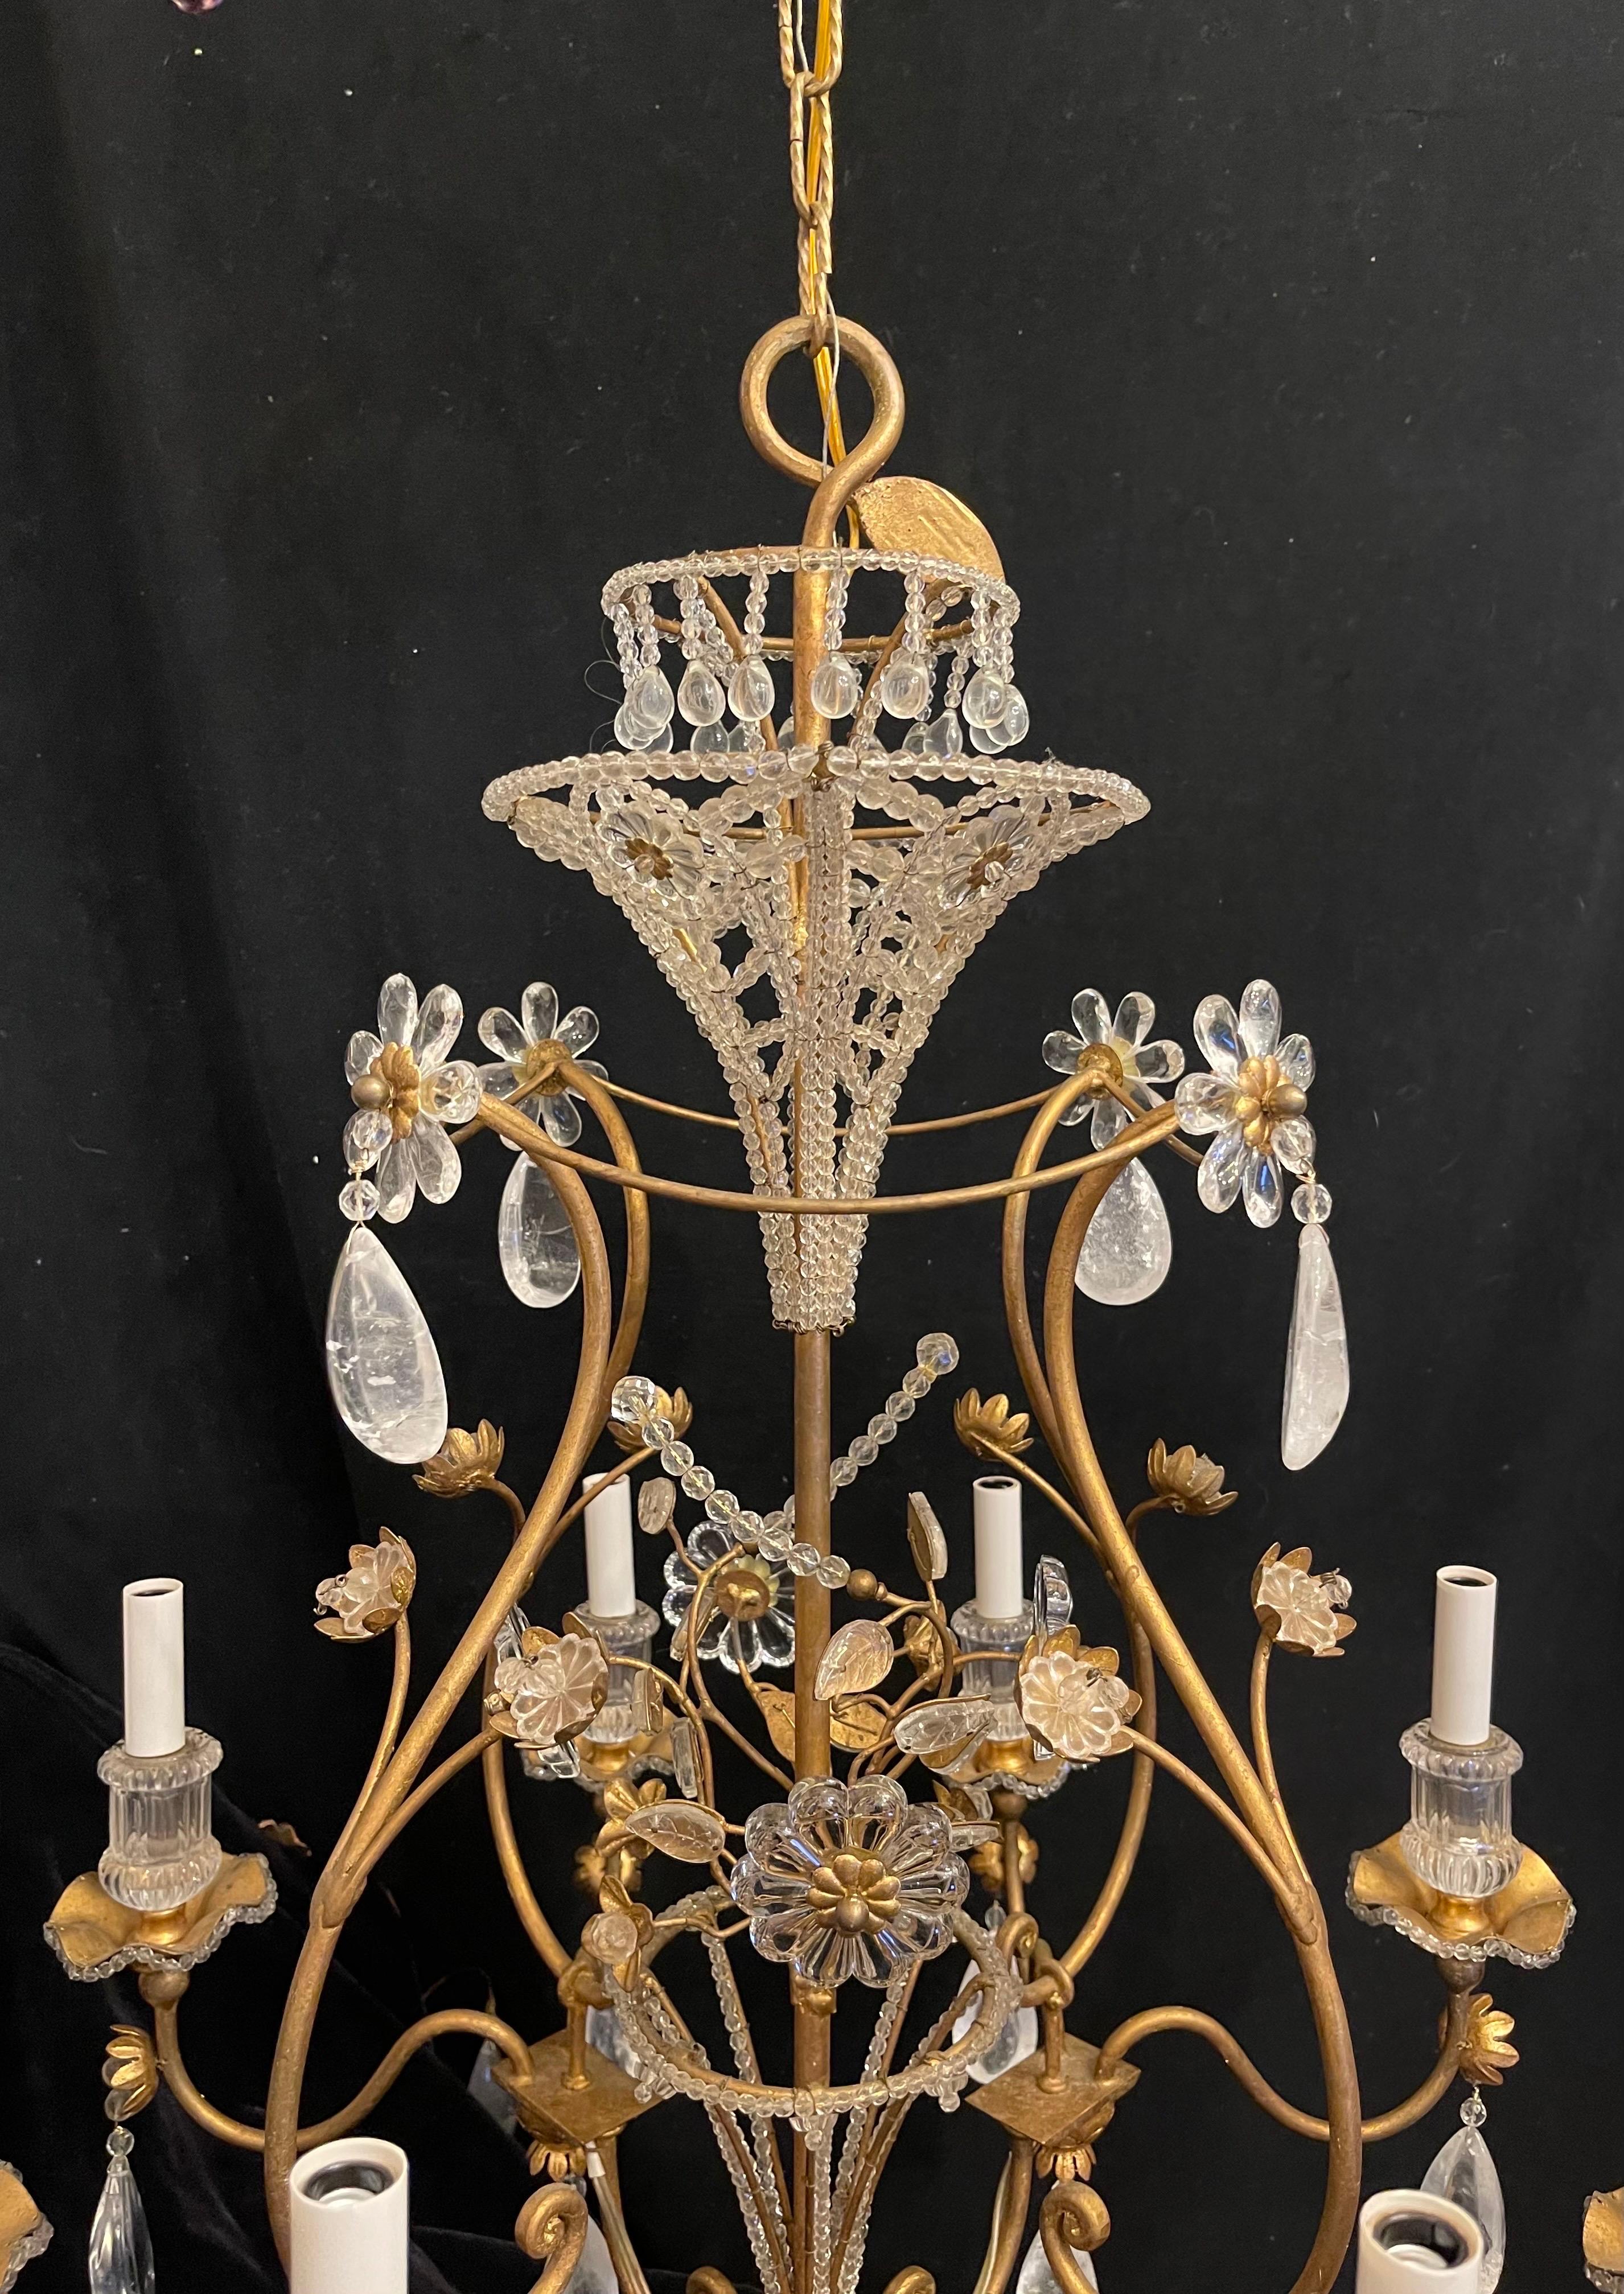 Eine wunderbare Mid-Century Modern Maison Baguès Stil Gold vergoldet mit Perlen Korb und Blumen, die zu Bergkristall Tropfen große 8 Kandelaber Licht Kronleuchter.